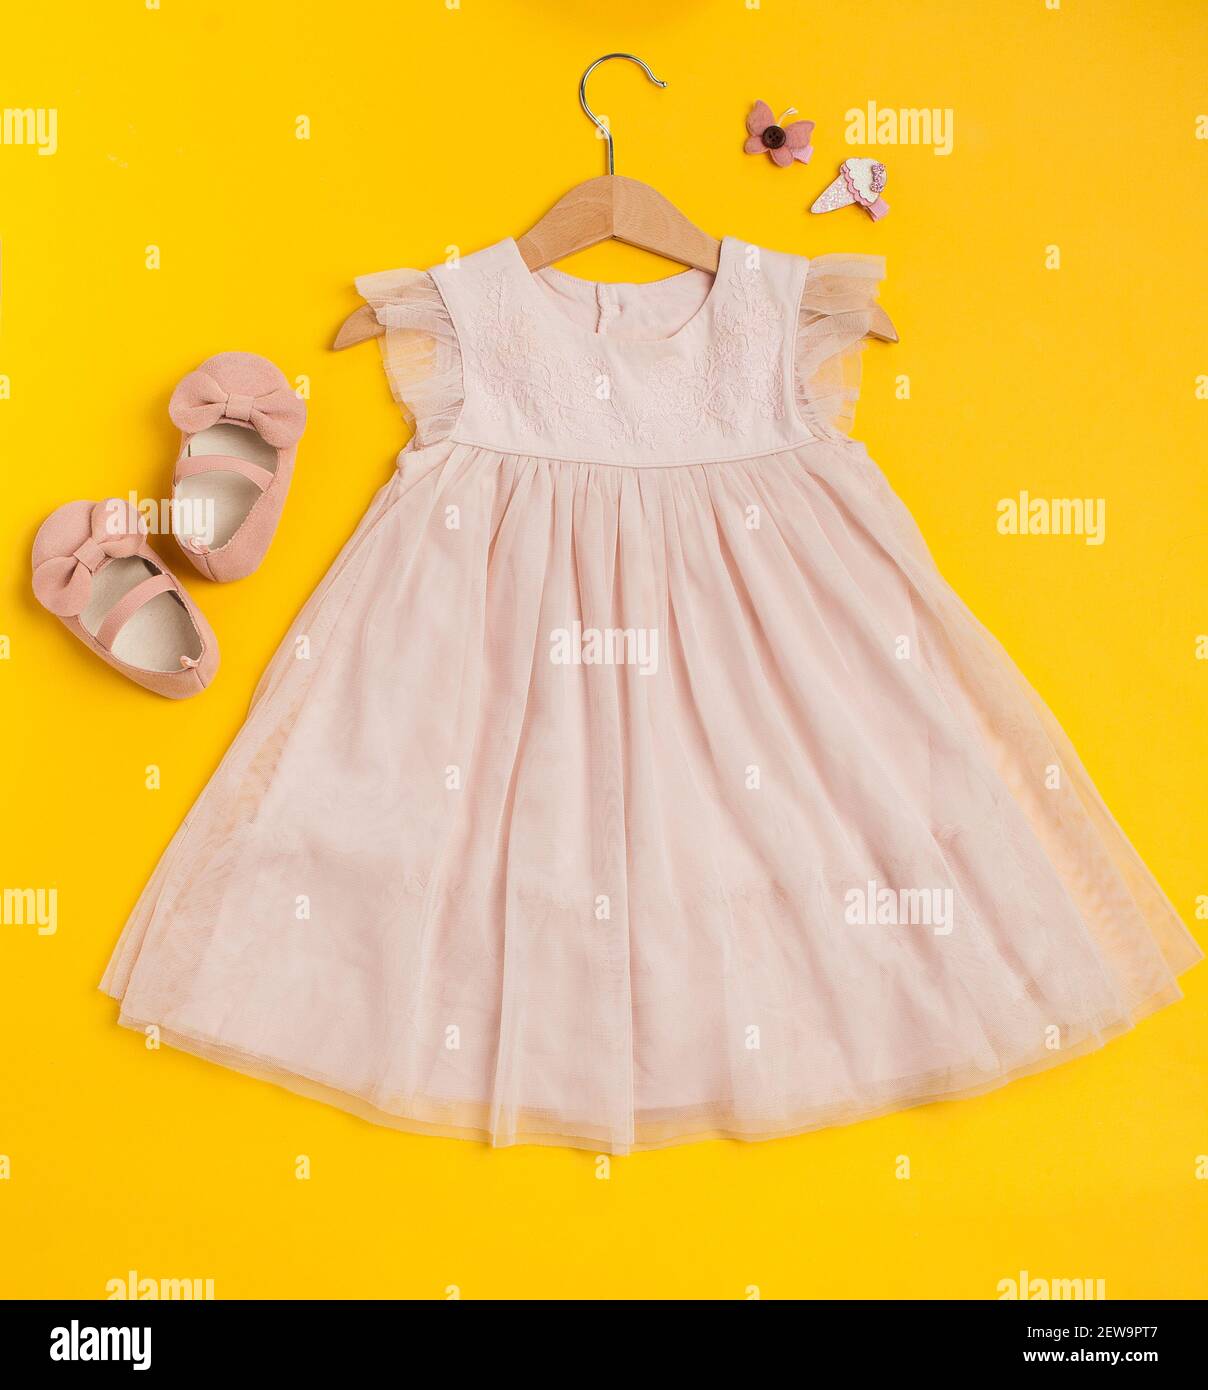 Tenue de fête pour enfants sur fond jaune.Jolie robe rose pour bébé avec  chaussures et épingles à cheveux Photo Stock - Alamy